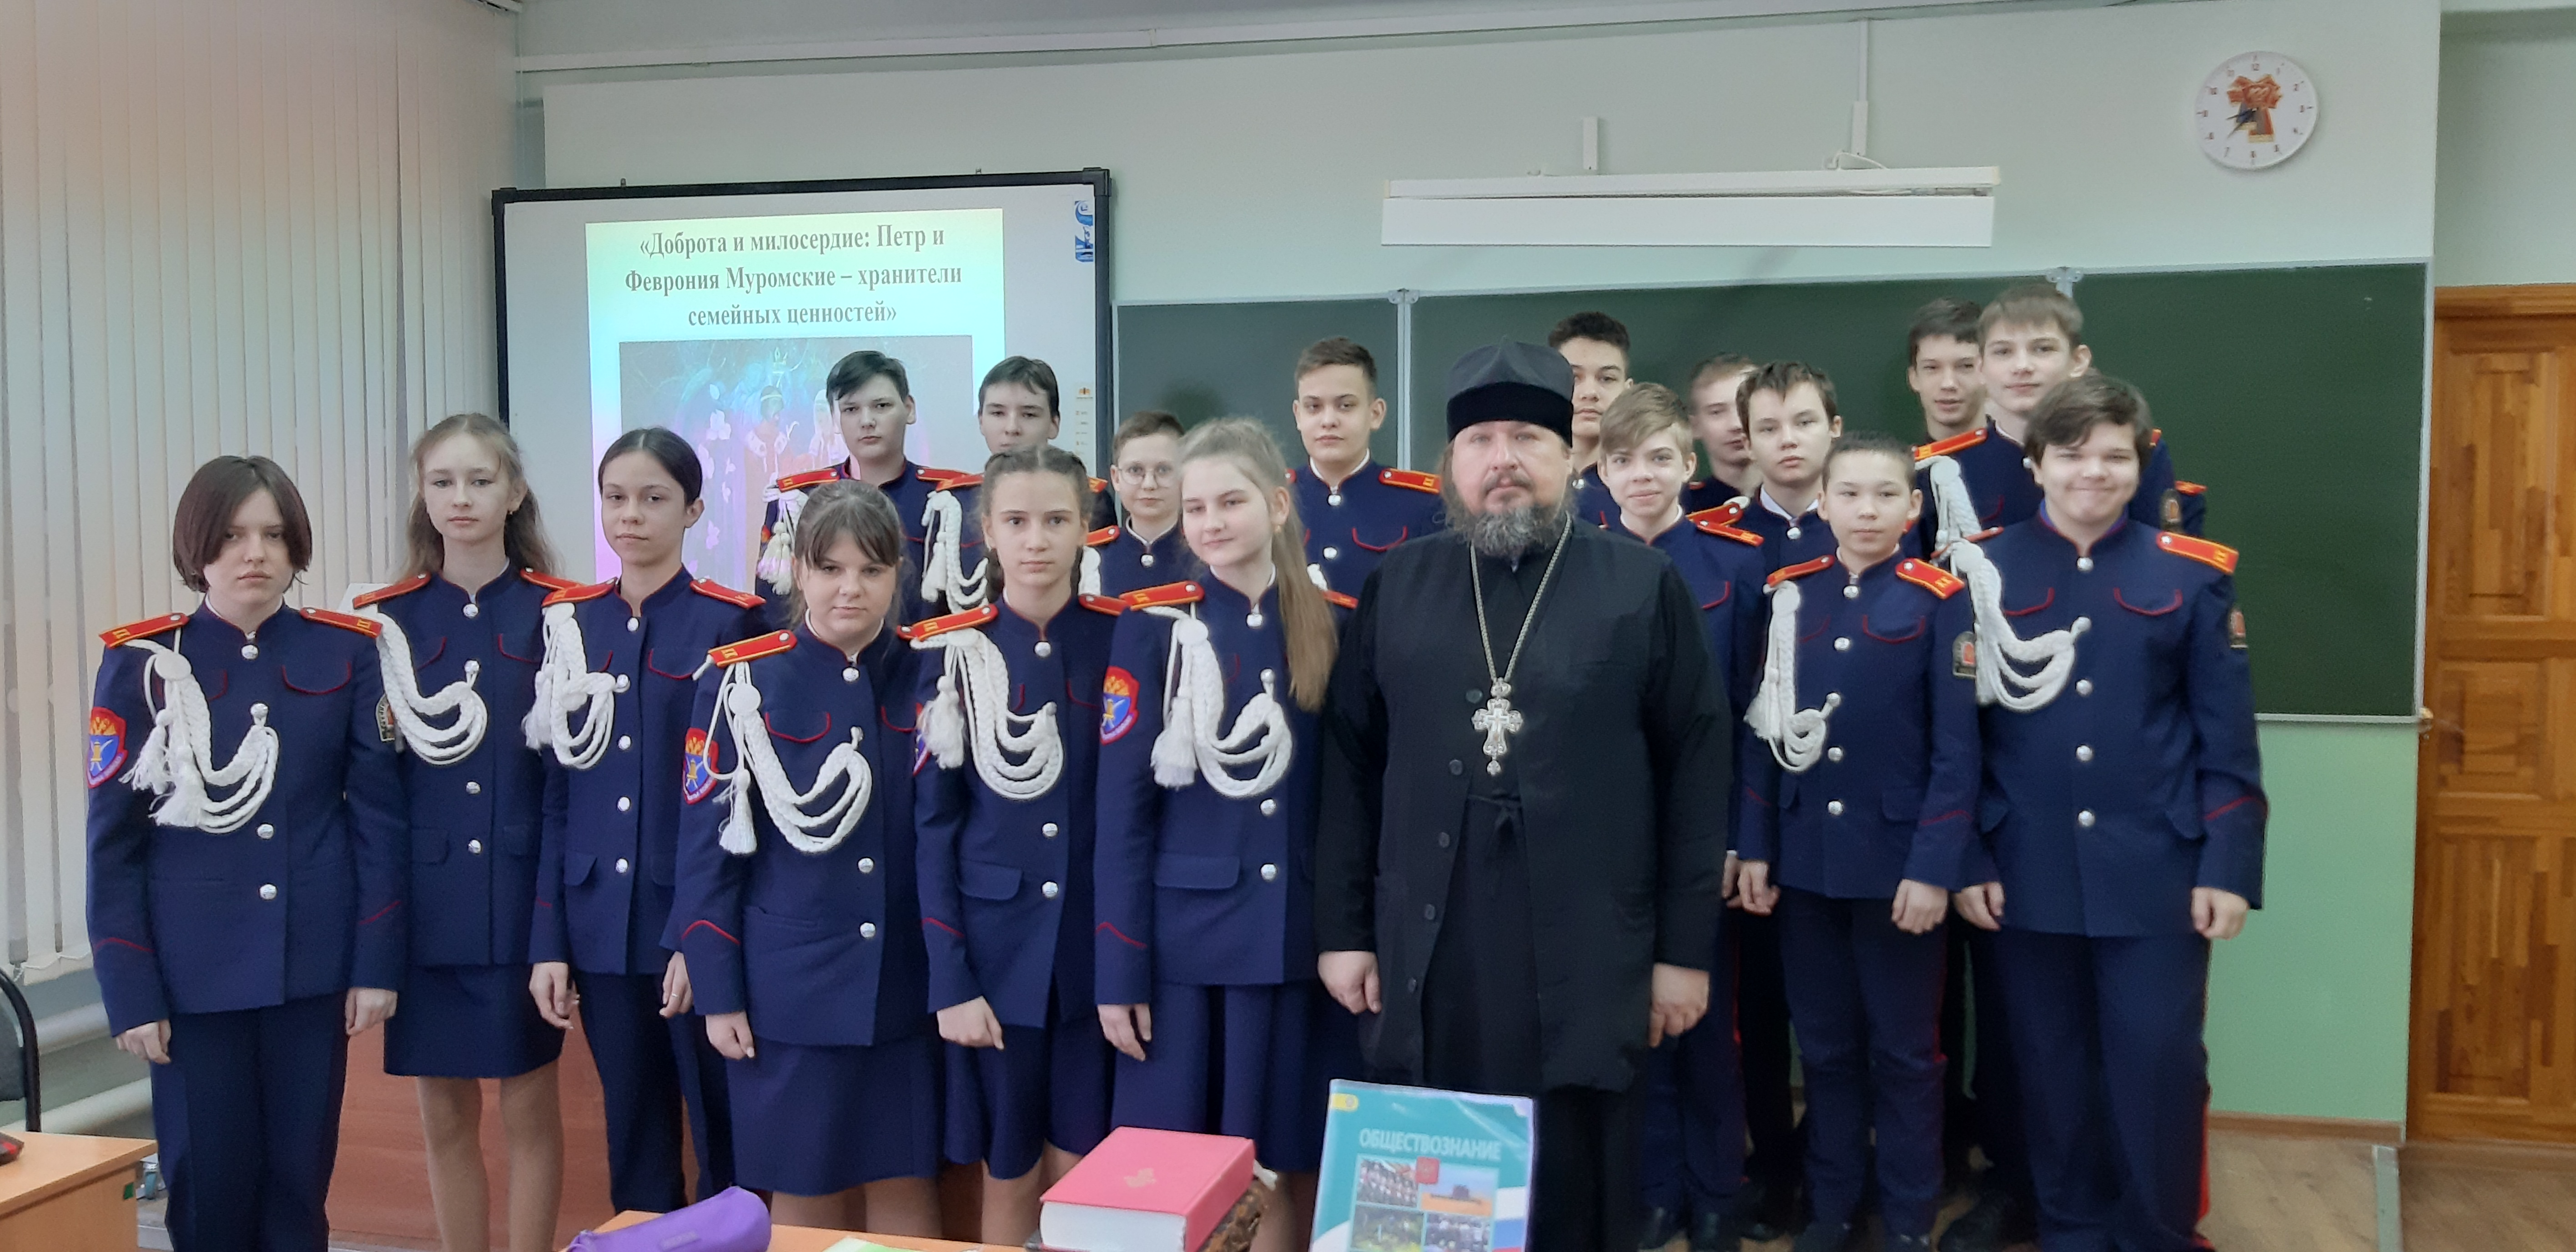 Встреча обучающихся 7Б класса с проректором Саранской духовной семинарии  отцом Павлом Горбуновым.